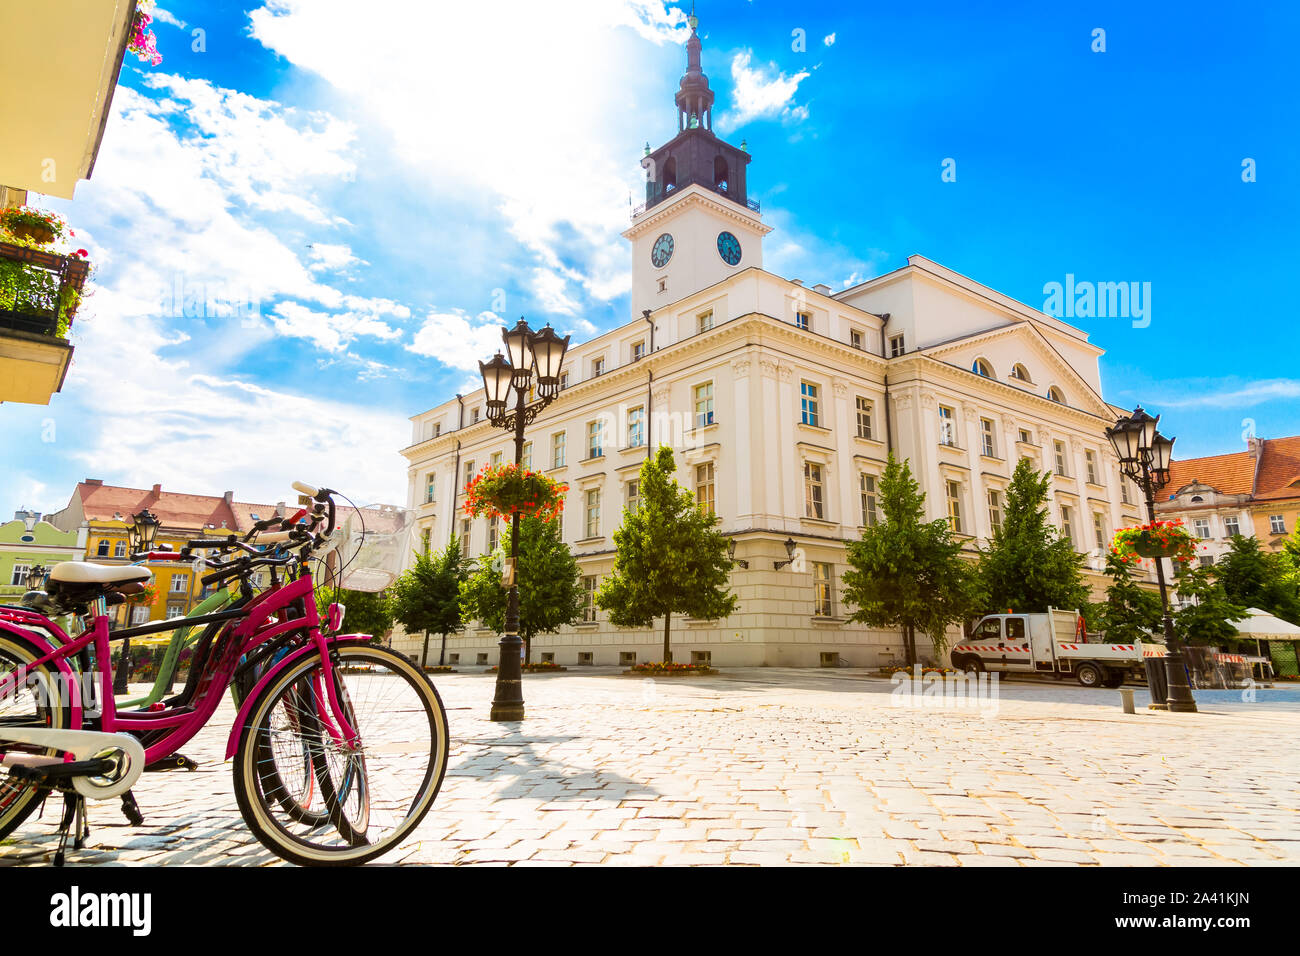 La place de la vieille ville, avec la mairie de ville de Kalisz, Pologne Banque D'Images